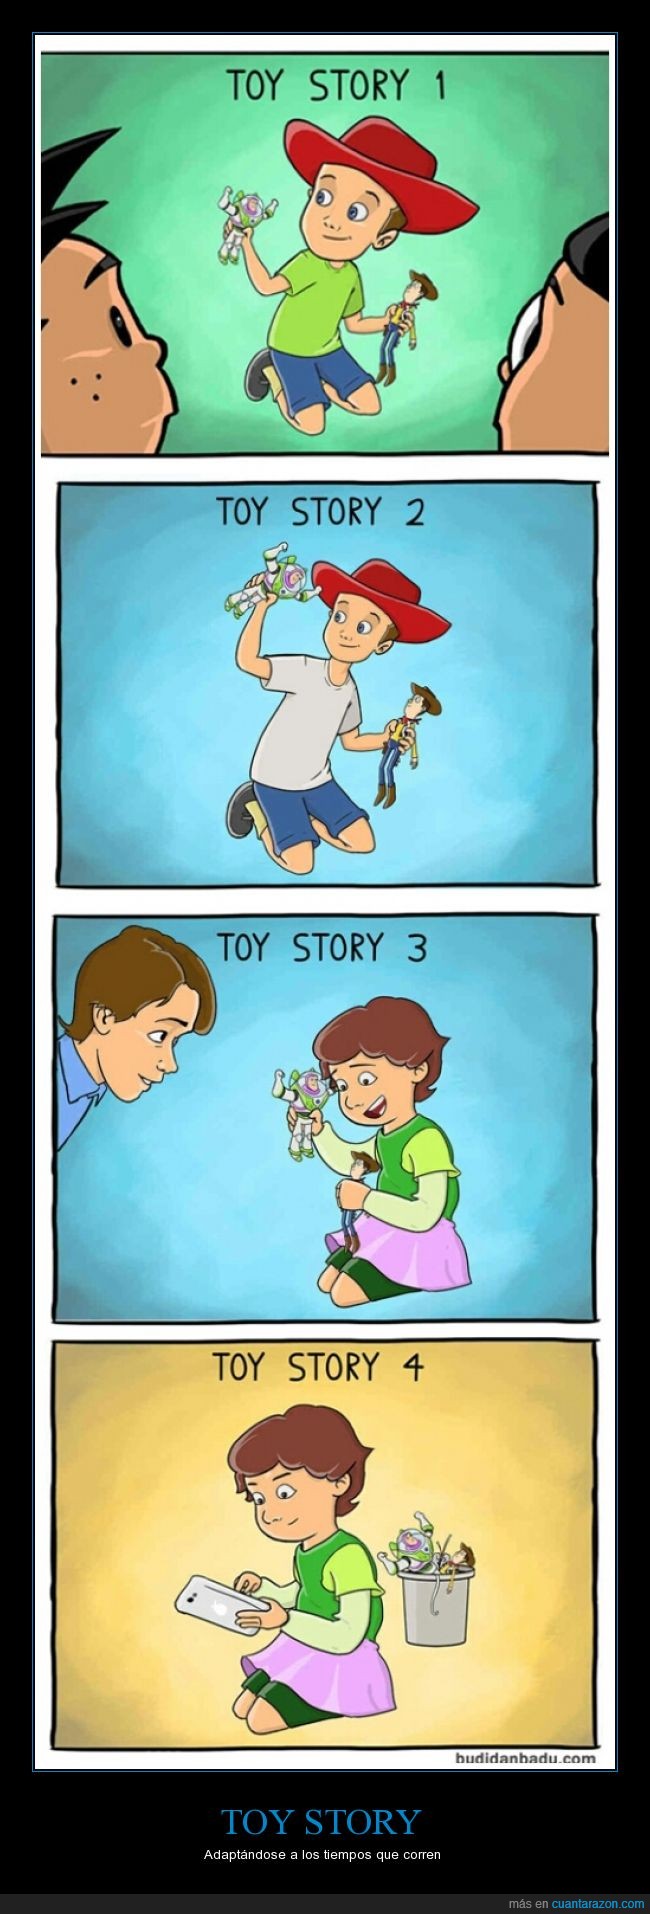 Toy story,película,Disney pixar,evolucionado,tecnología smartphone